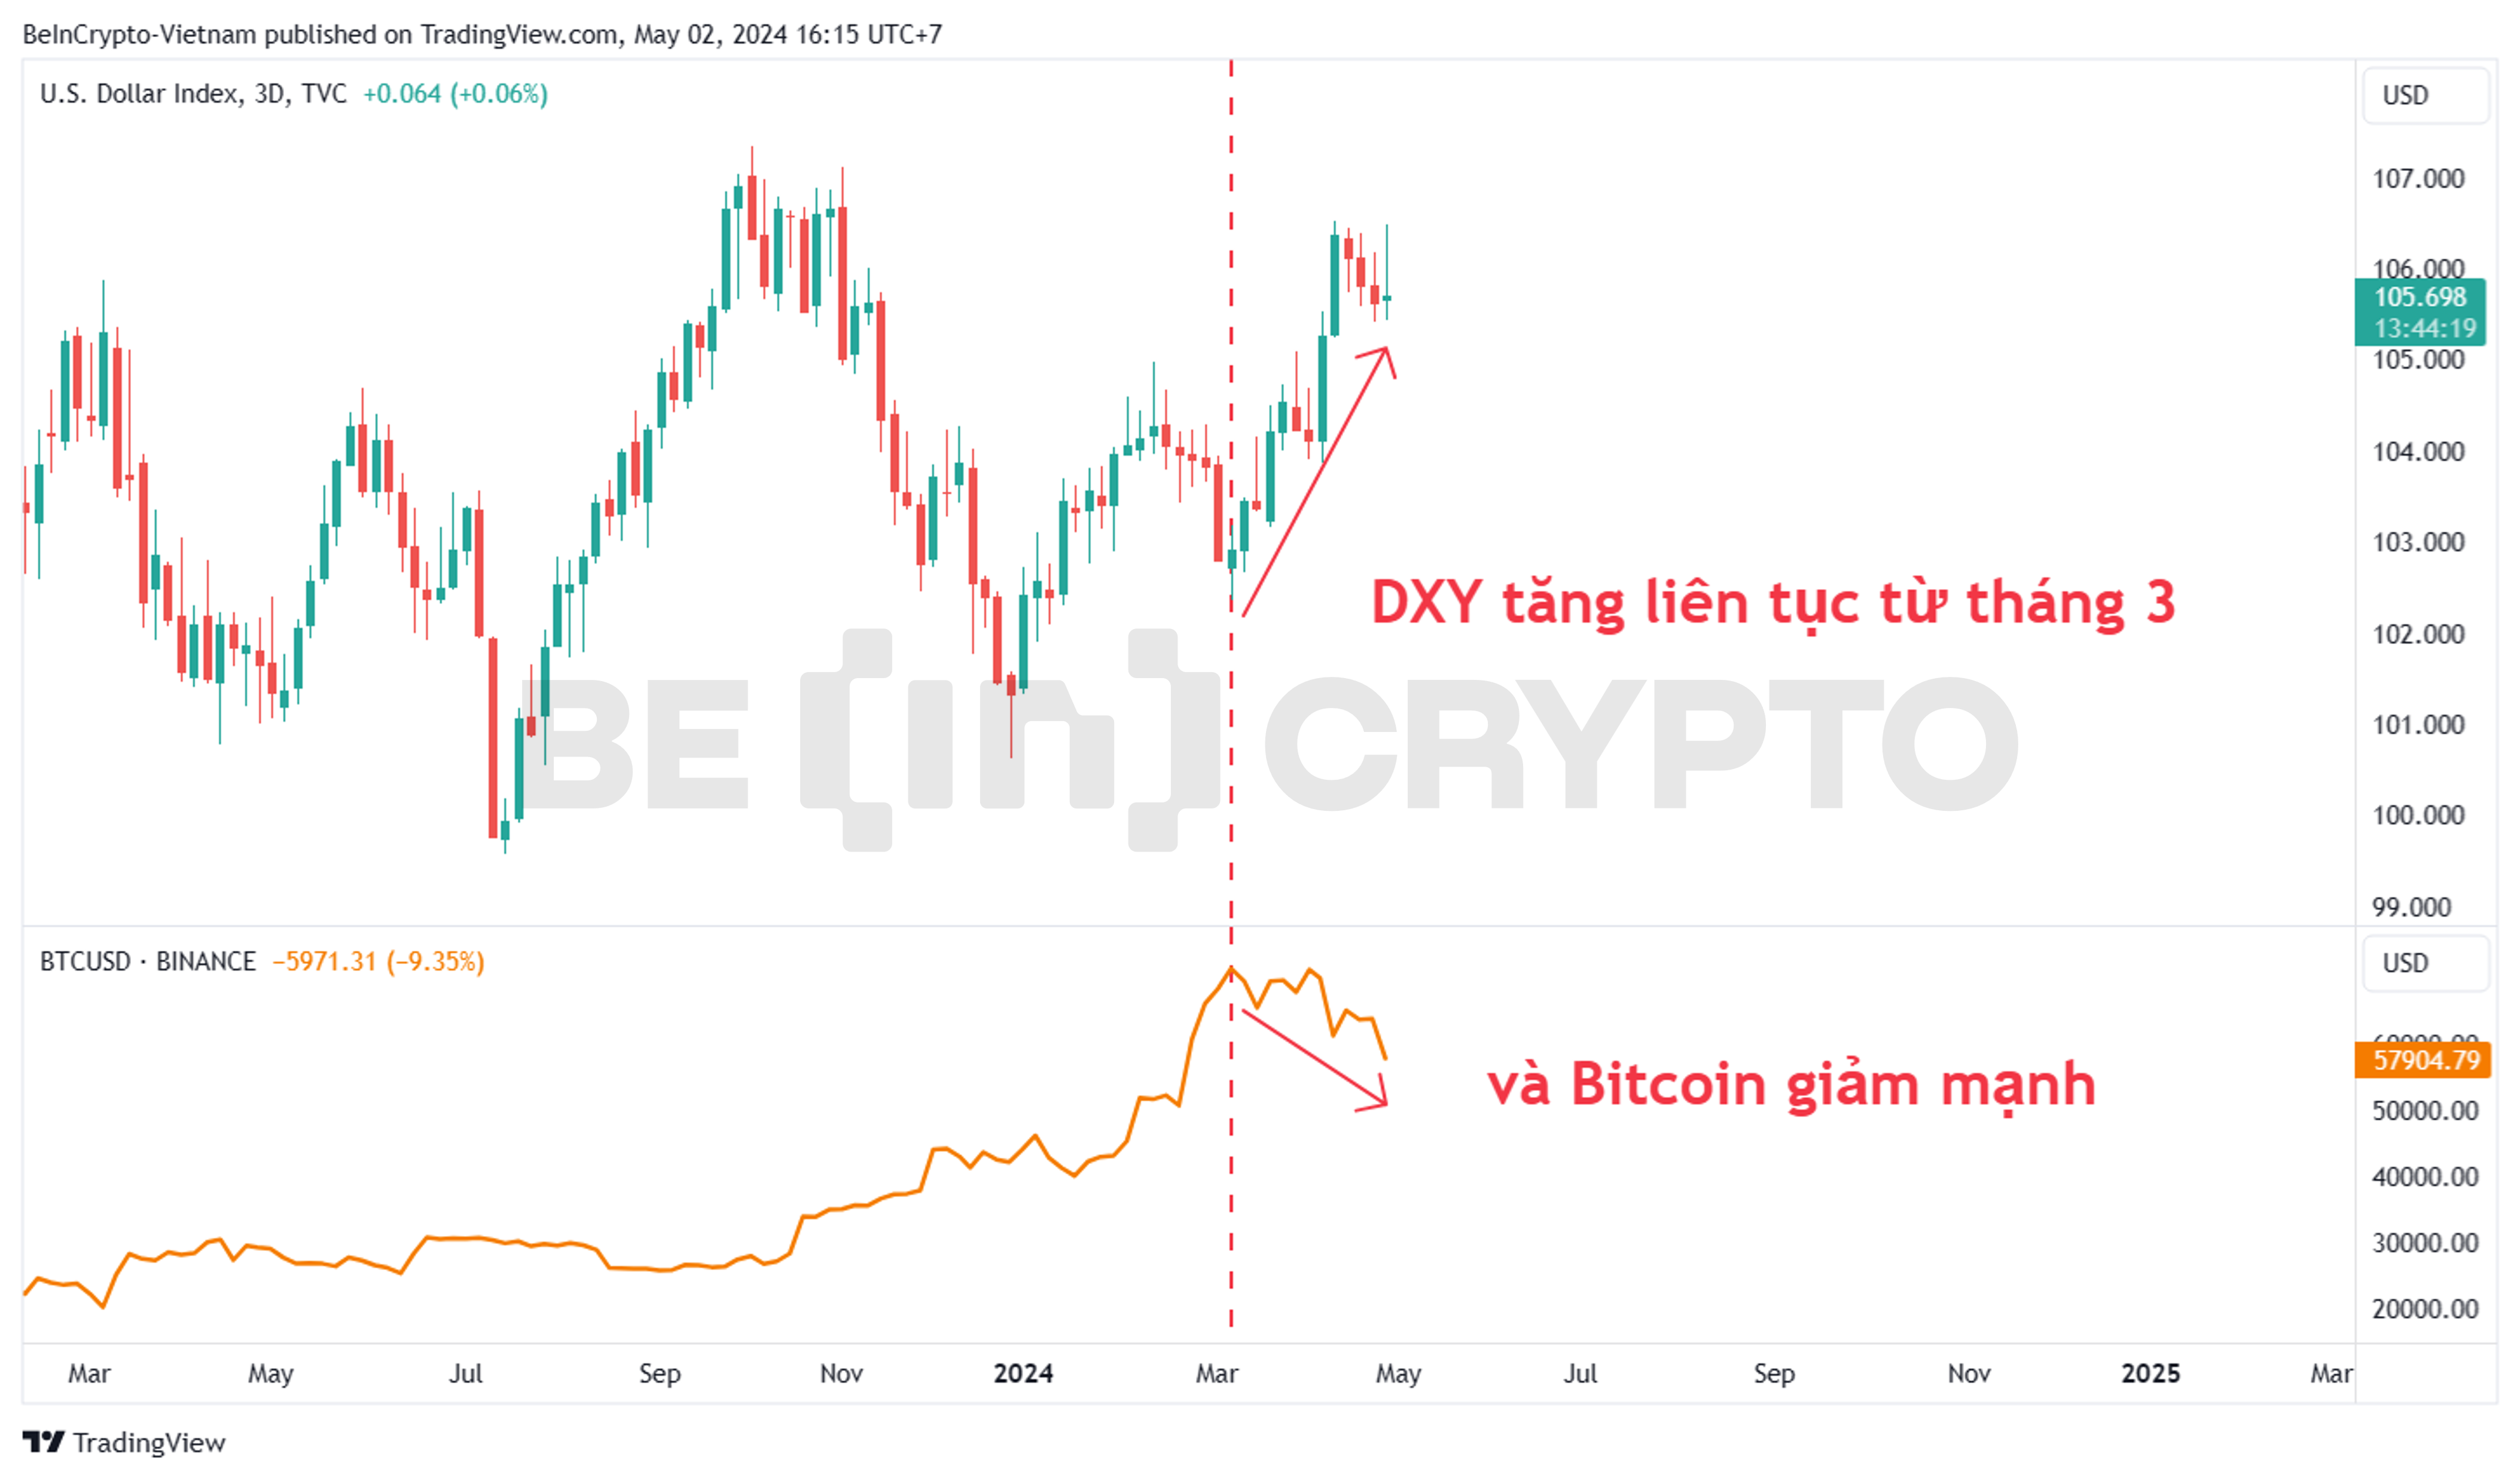 Tín hiệu phân kỳ giữa DXY và Bitcoin trong hơn một tháng qua.